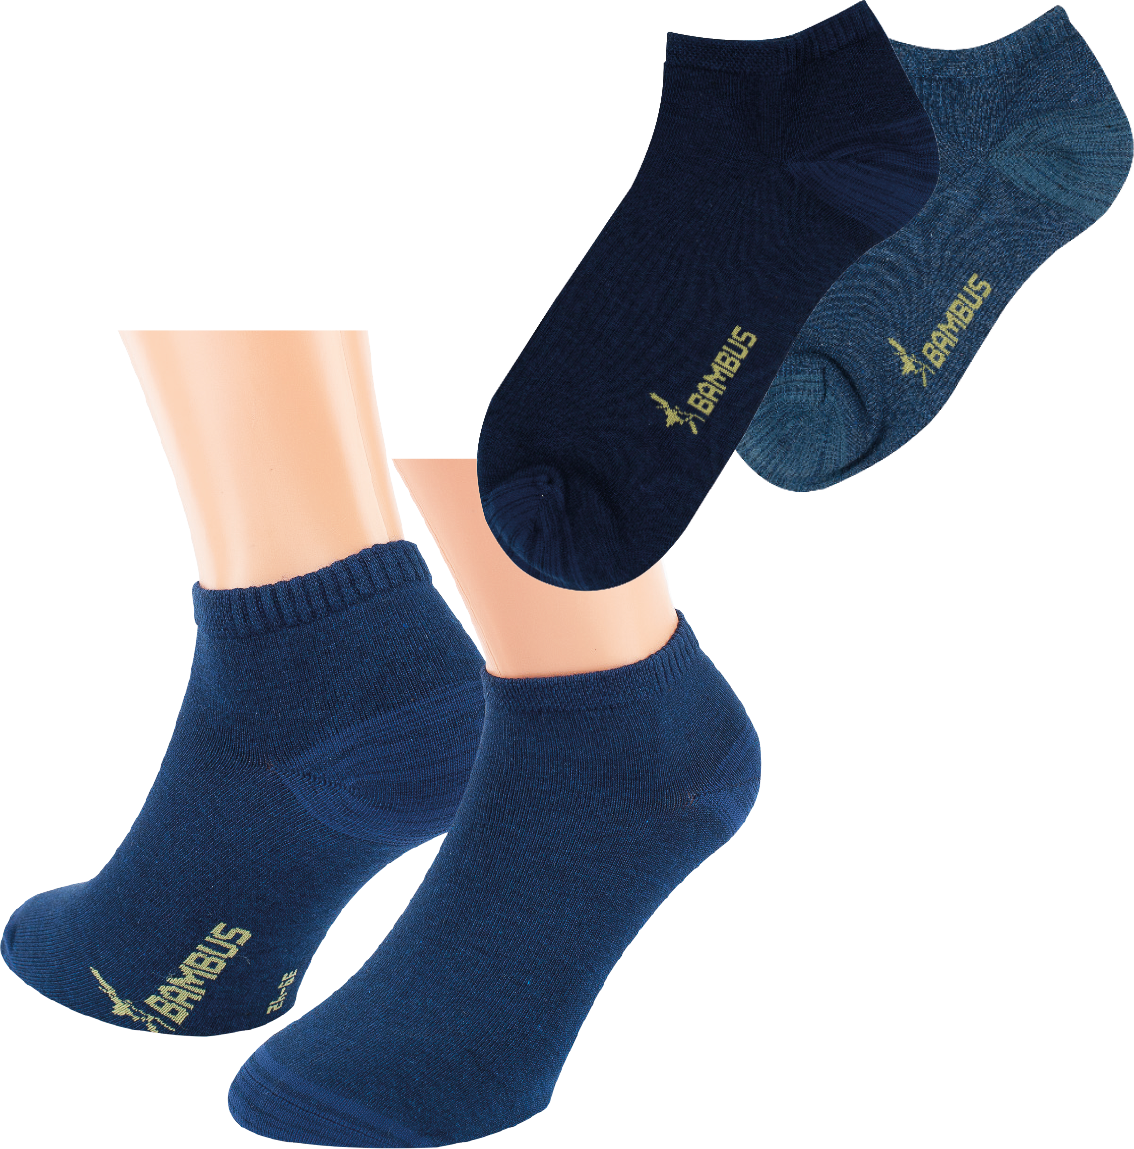 3-15 pares de calcetines deportivos para hombres y mujeres, muy buena calidad con un toque de comodidad.